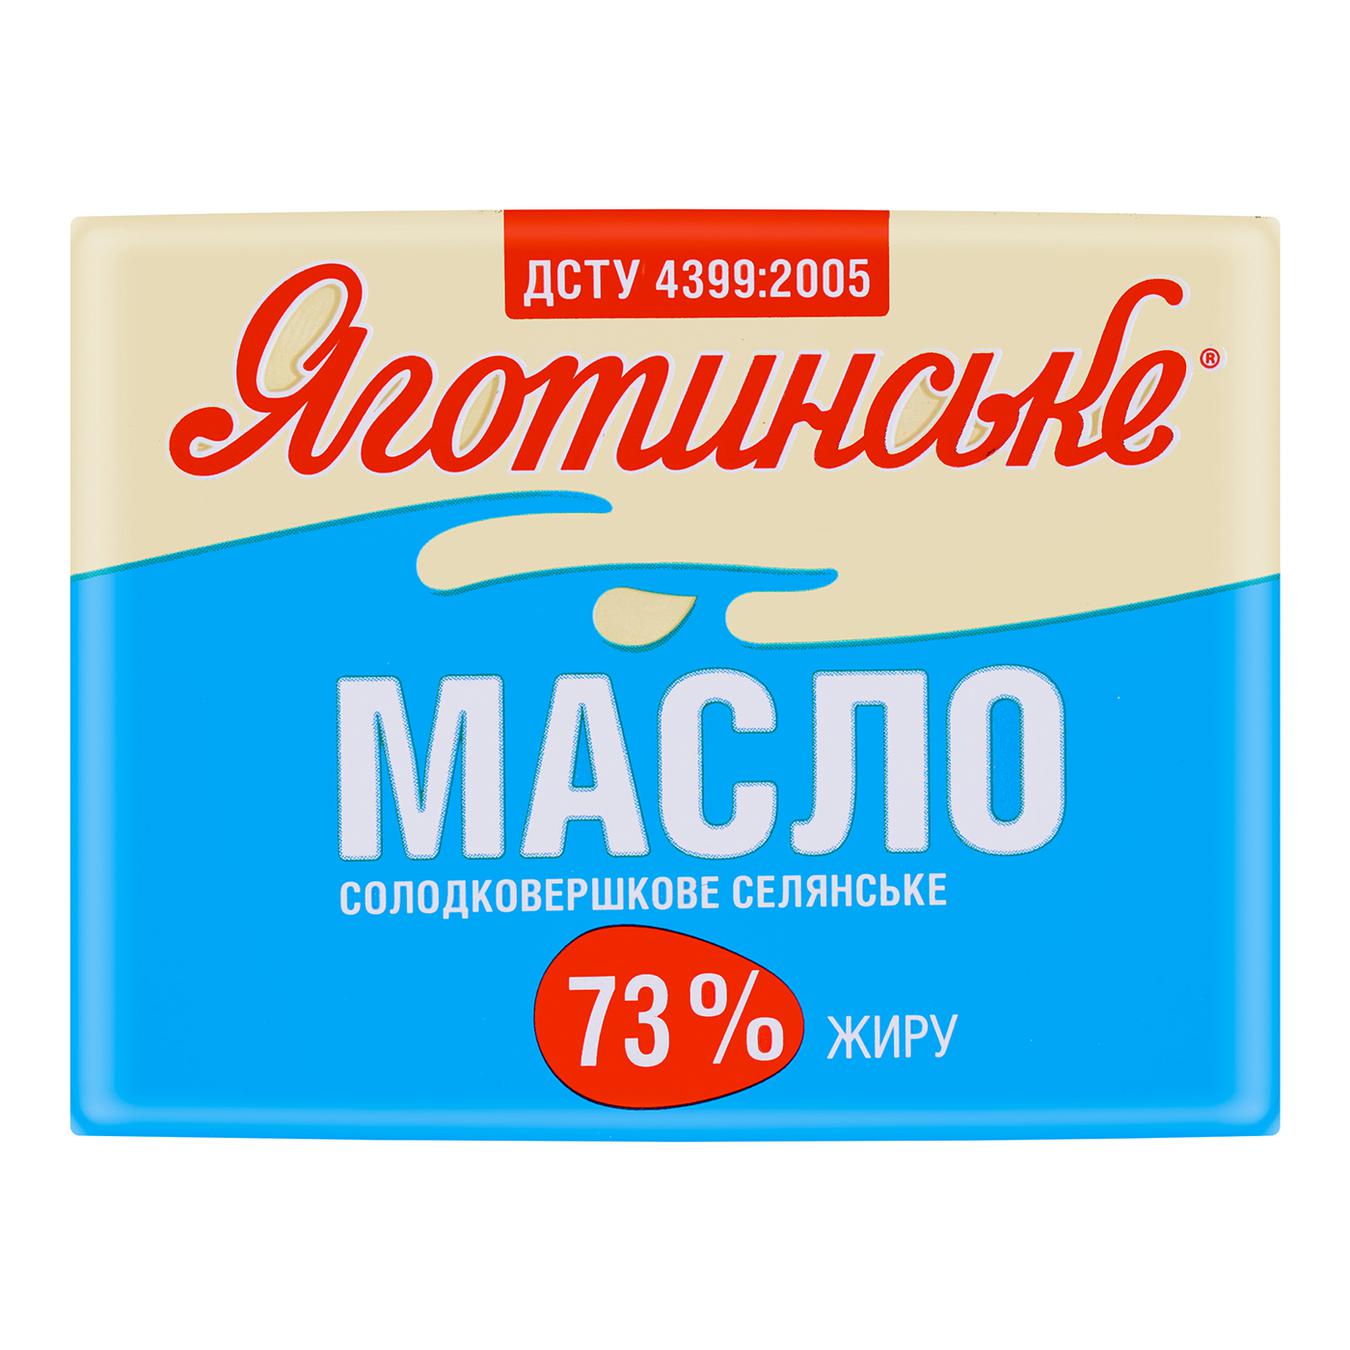 Масло Яготинське селянське солодковершкове 73% 180г